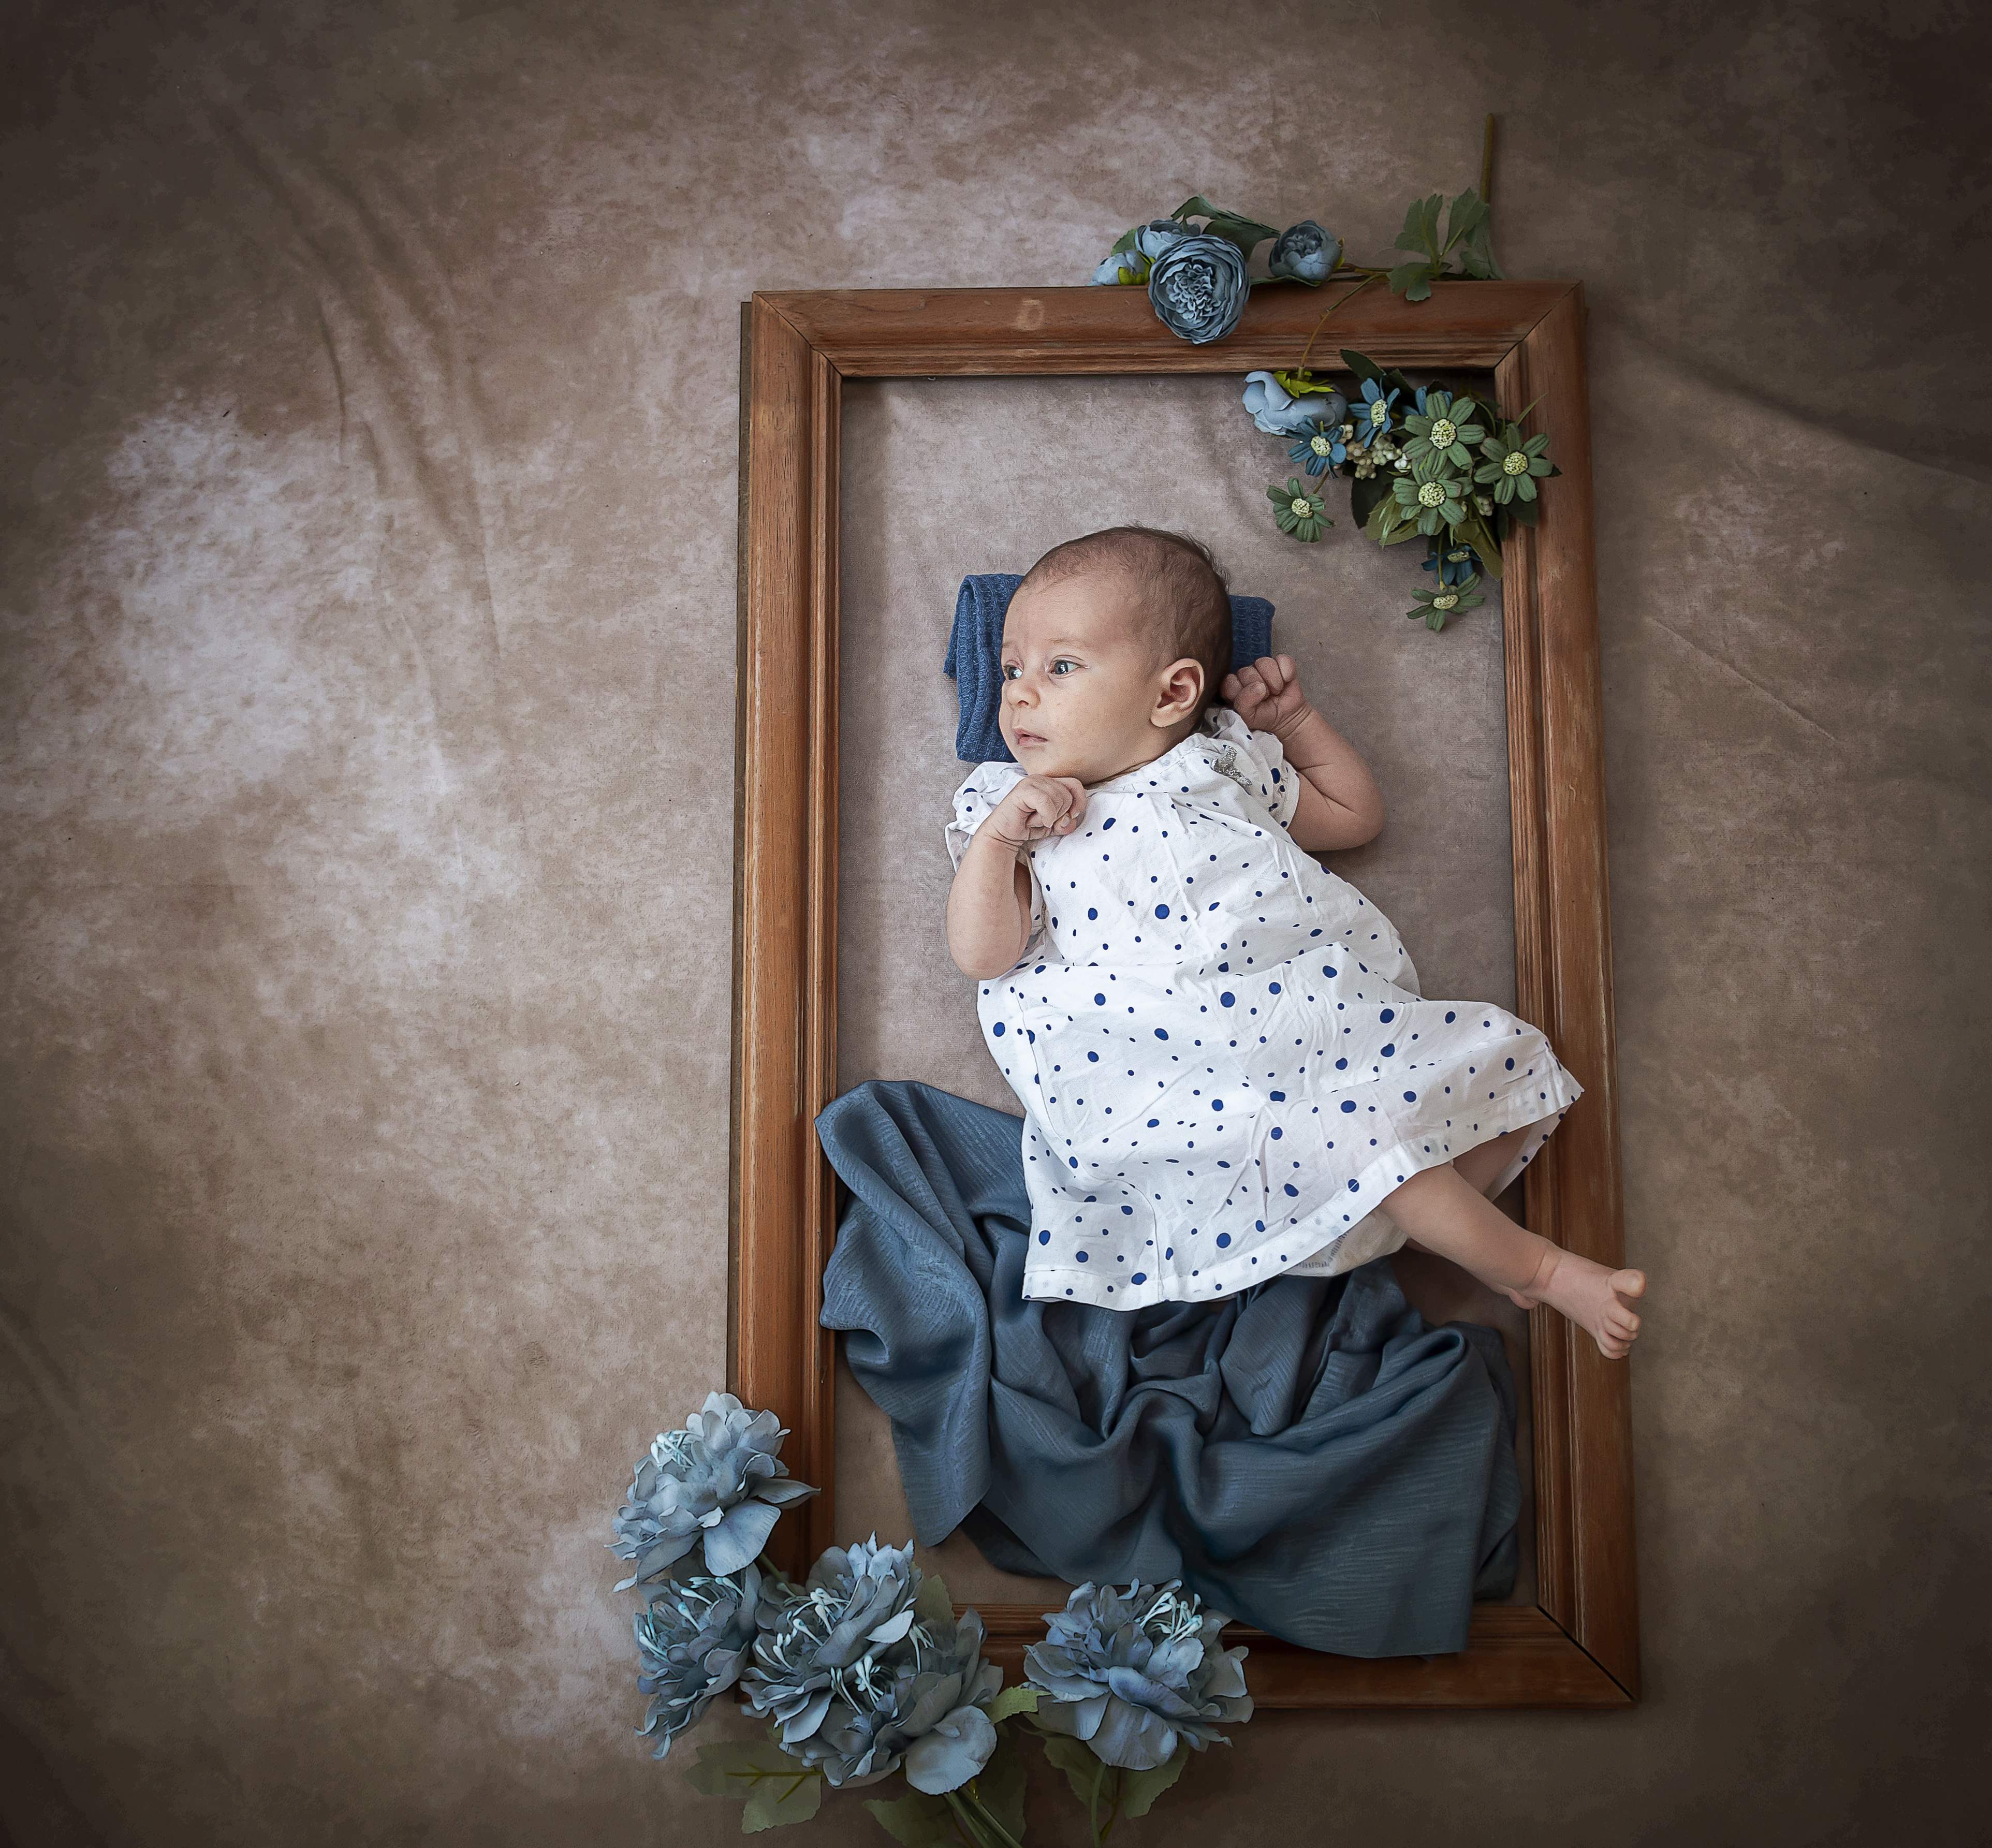 "5 Tipps, um einen Fotografen für Neugeborenenfotos auszuwählen".